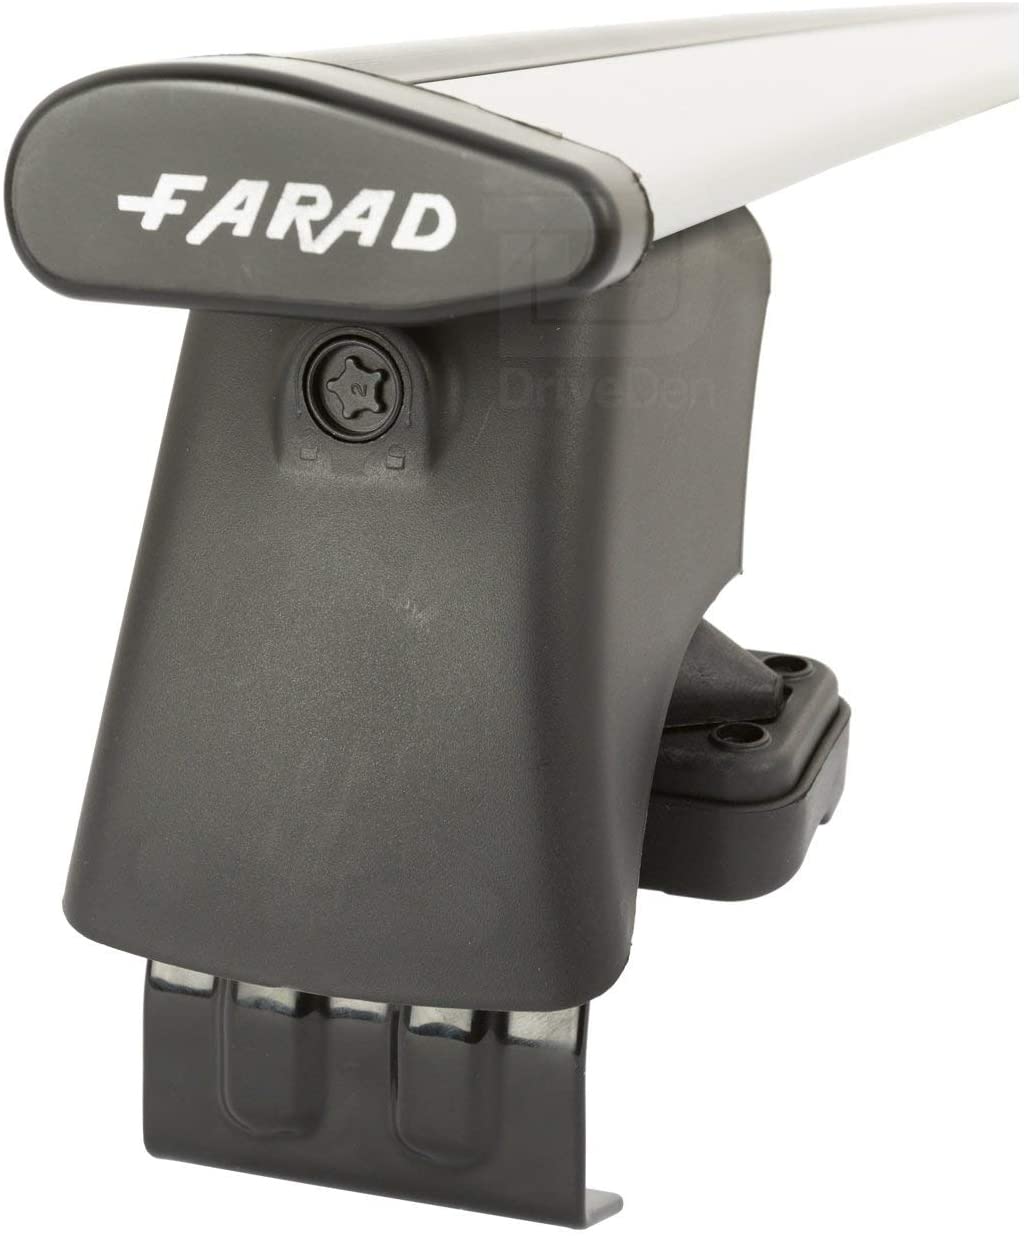 FARAD-Kit H2 per barre portatutto - Chevrolet Cruze Hatchback 2009-2015 (senza corrimano)